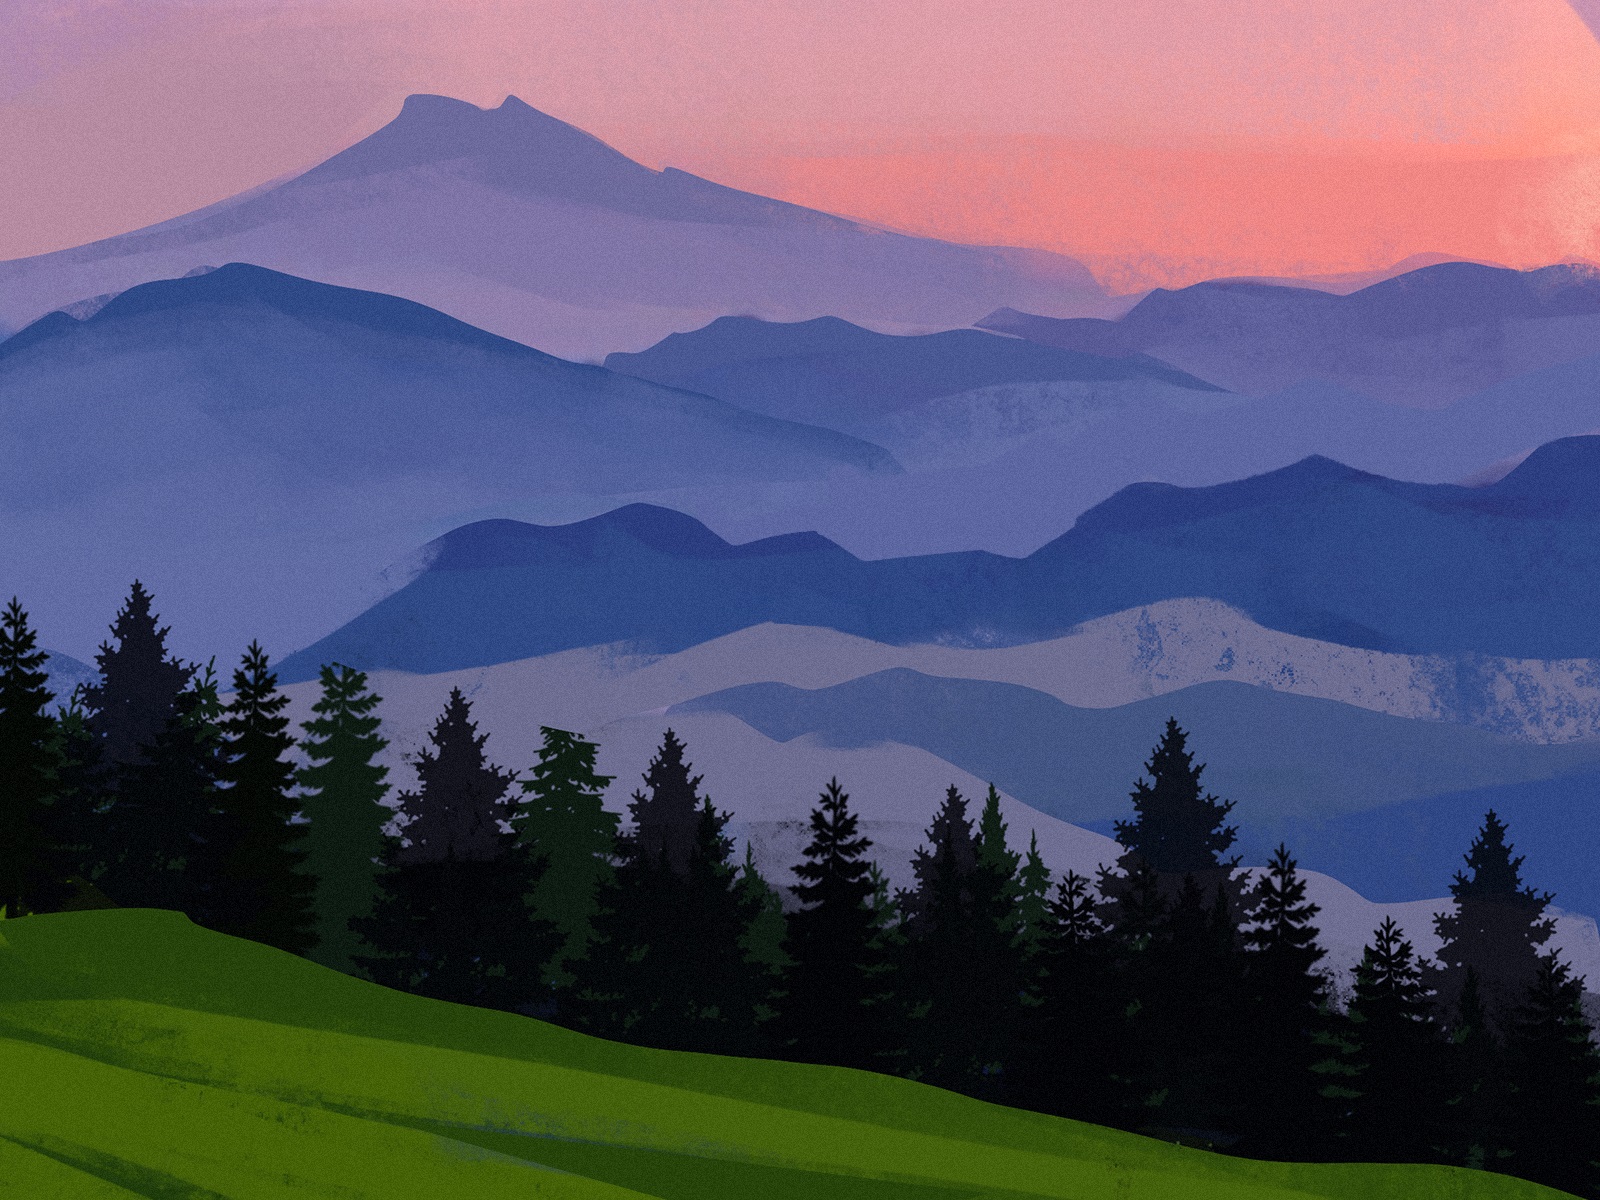 landscape art sunset forest tubikarts illustration